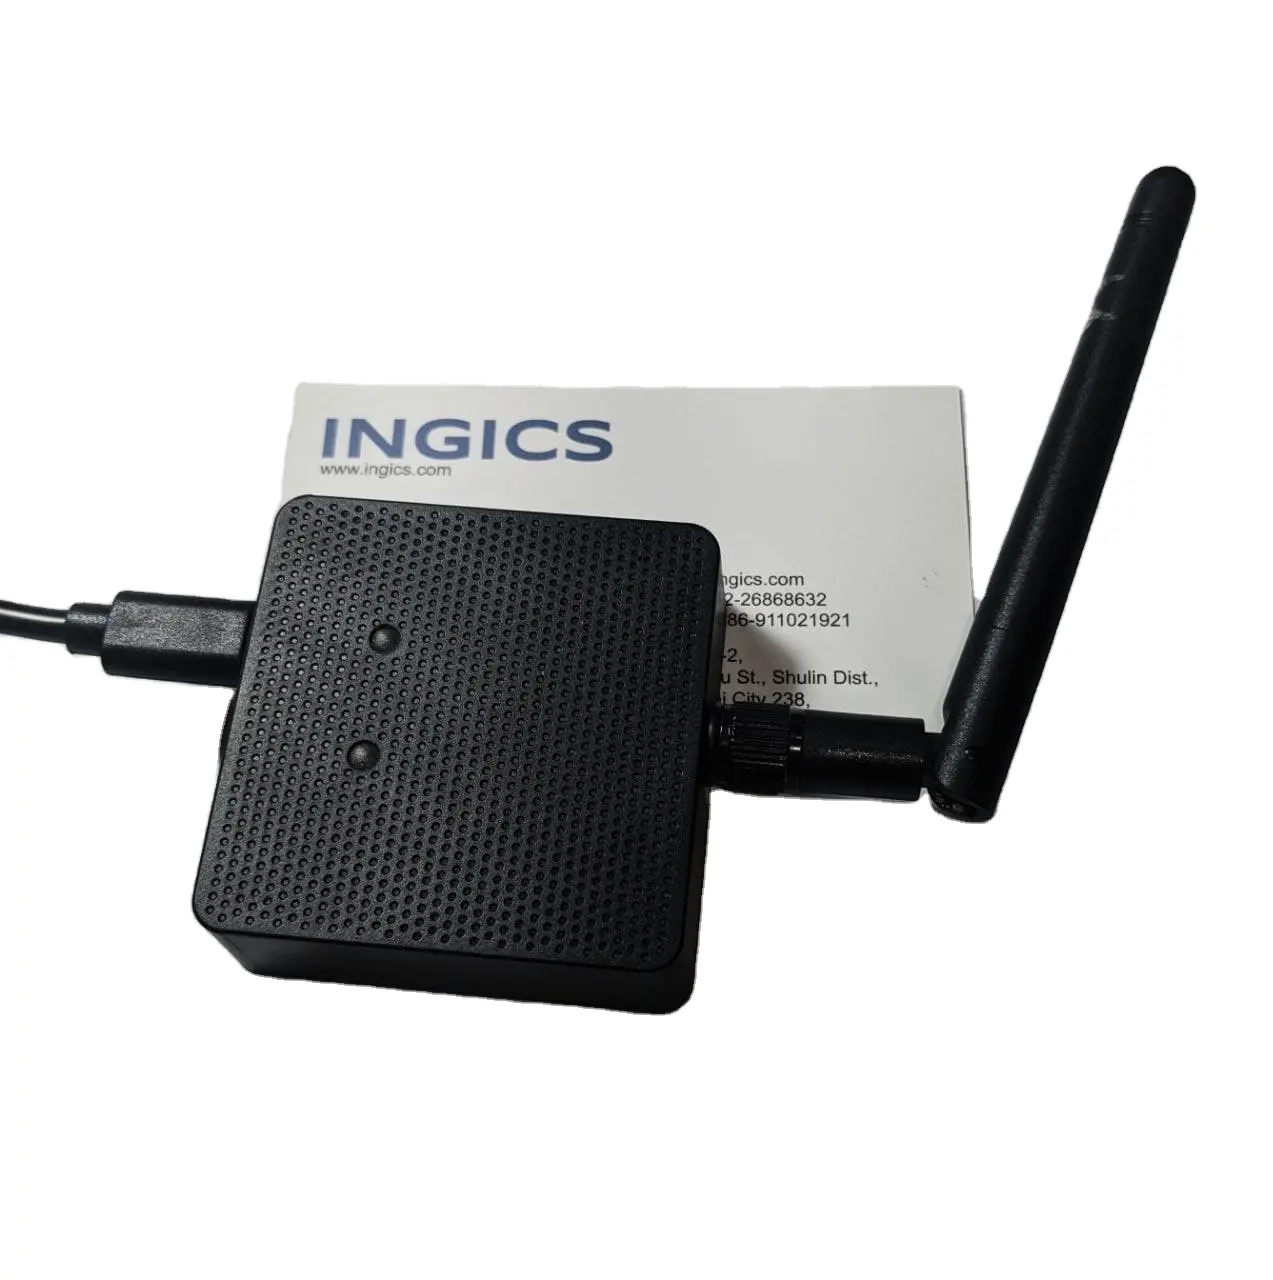 IoT-fähiges BLE-WiFi Beacon Gateway Kommunikation und Netzwerkprodukt